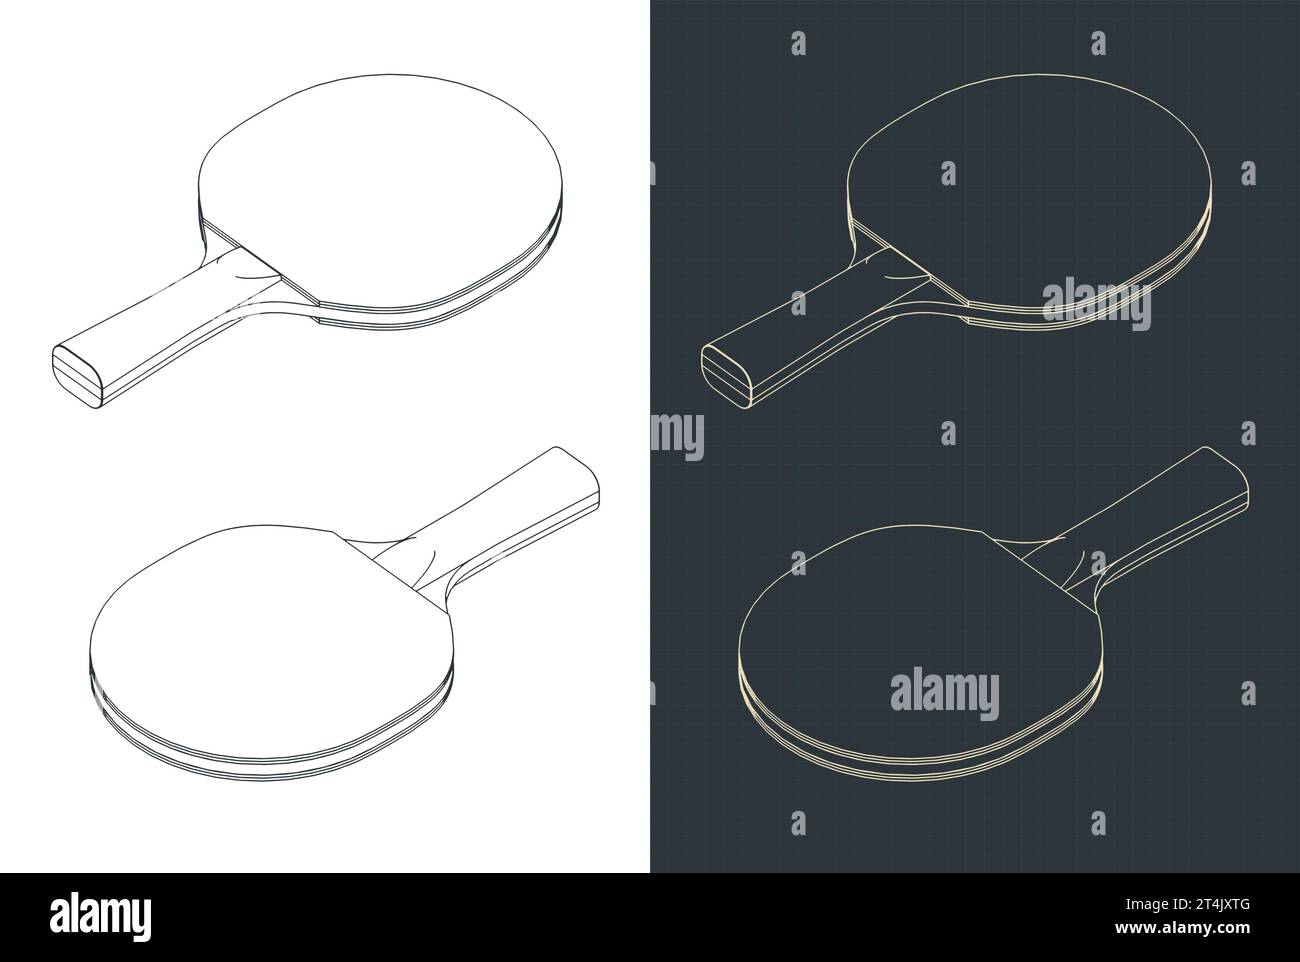 Illustrazioni vettoriali stilizzate di progetti isometrici della racchetta da ping pong Illustrazione Vettoriale